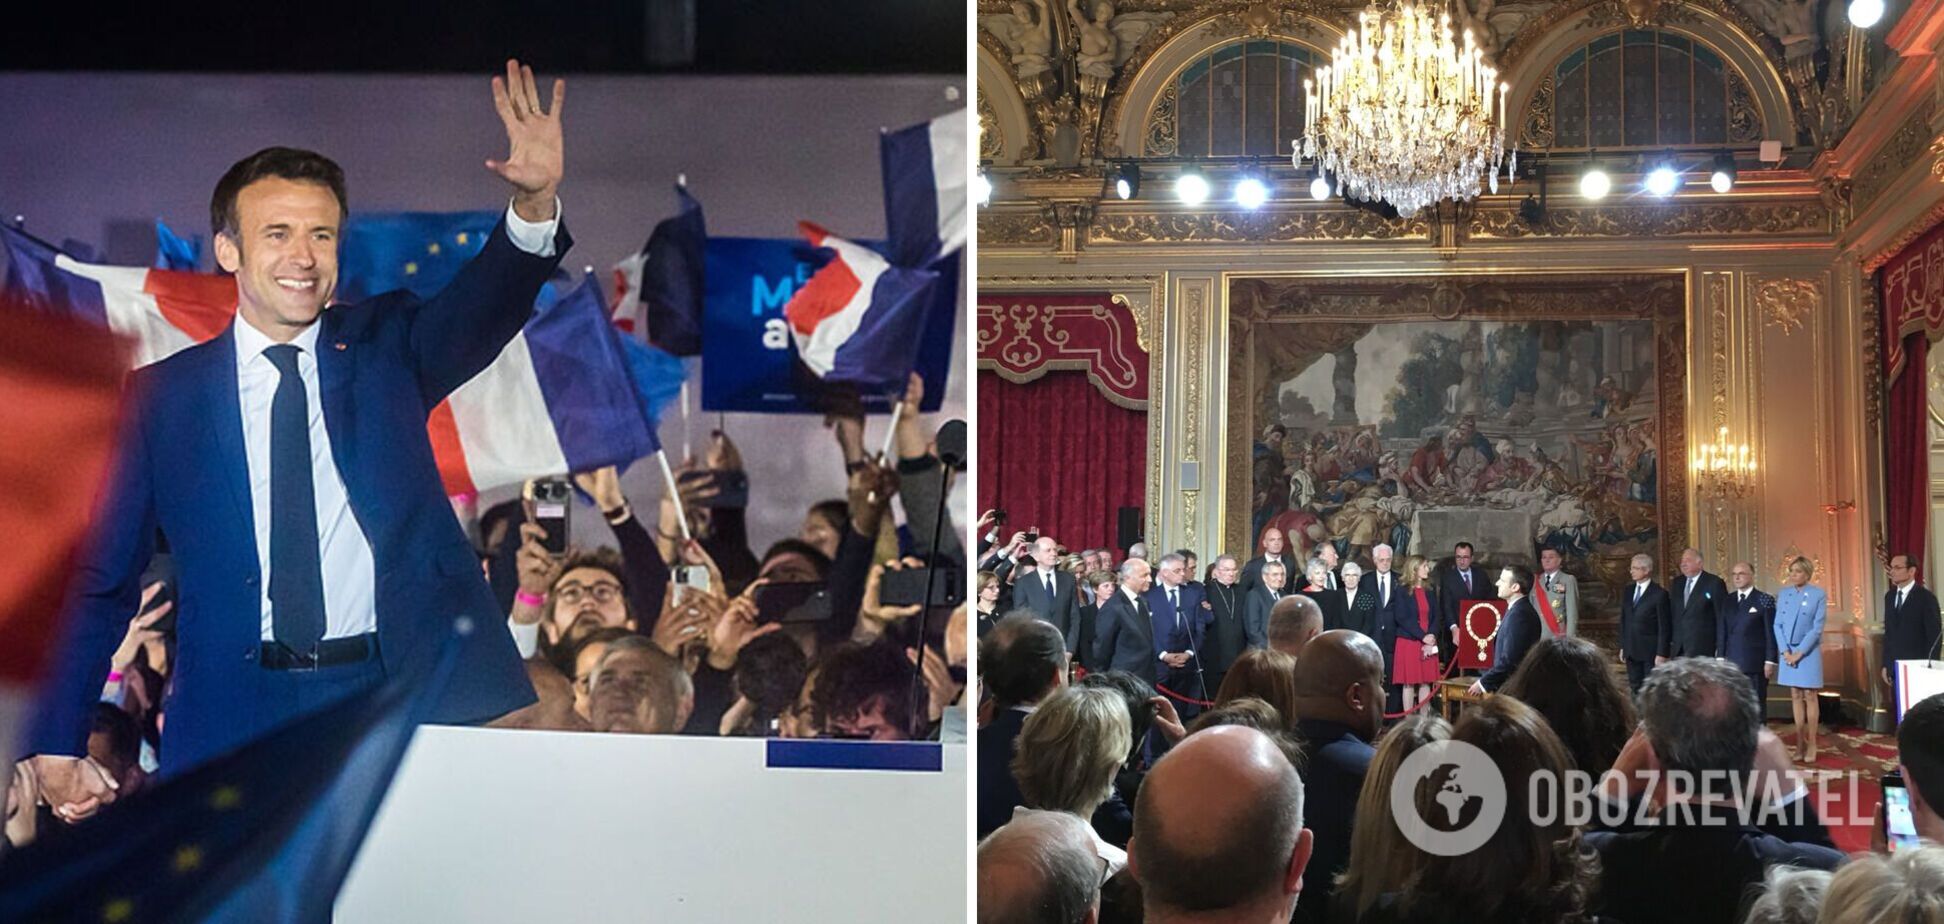 В Париже прошла инаугурация Эммануэля Макрона. Фото, видео и все подробности